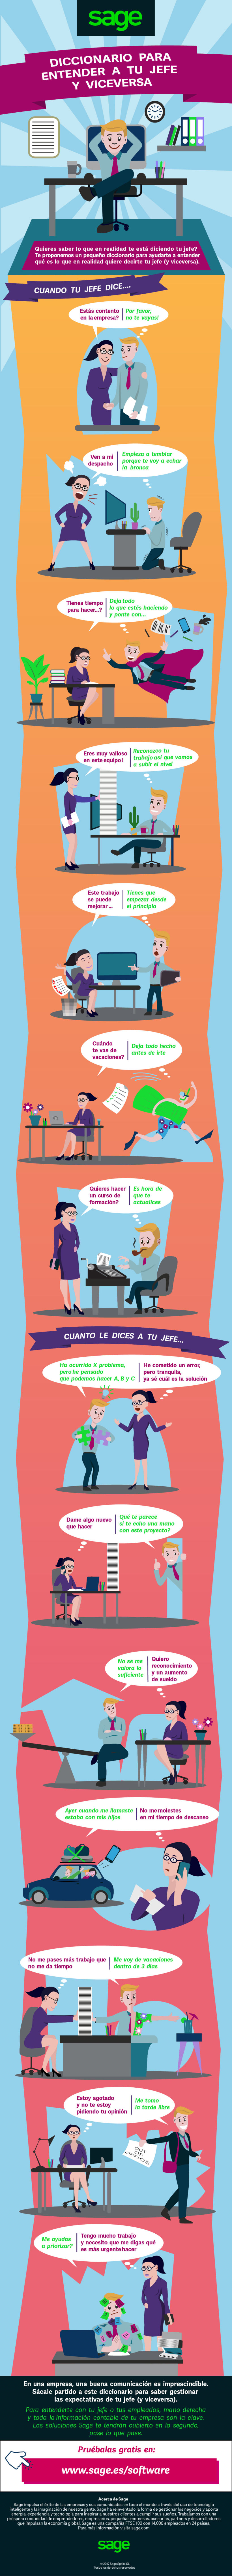 Infografia Sage: "Dicionário para intender a tu jefe, y viceversa" -1